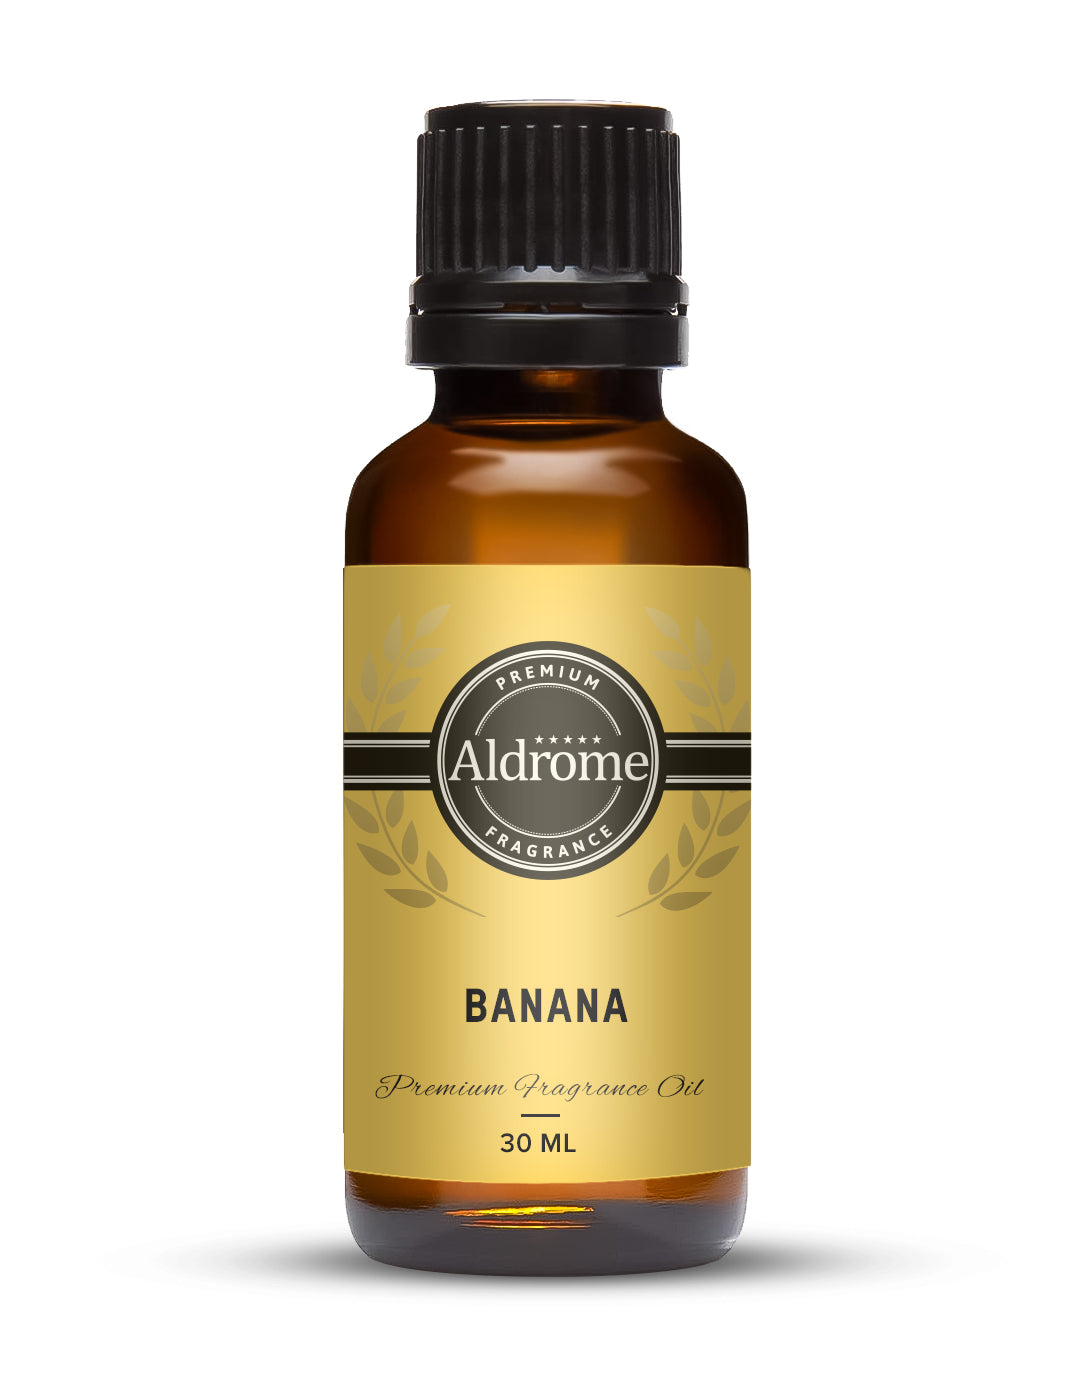 Banana Fragrance Oil - 30ml | Buy Banana Fragrance Oils Online at Best Prices